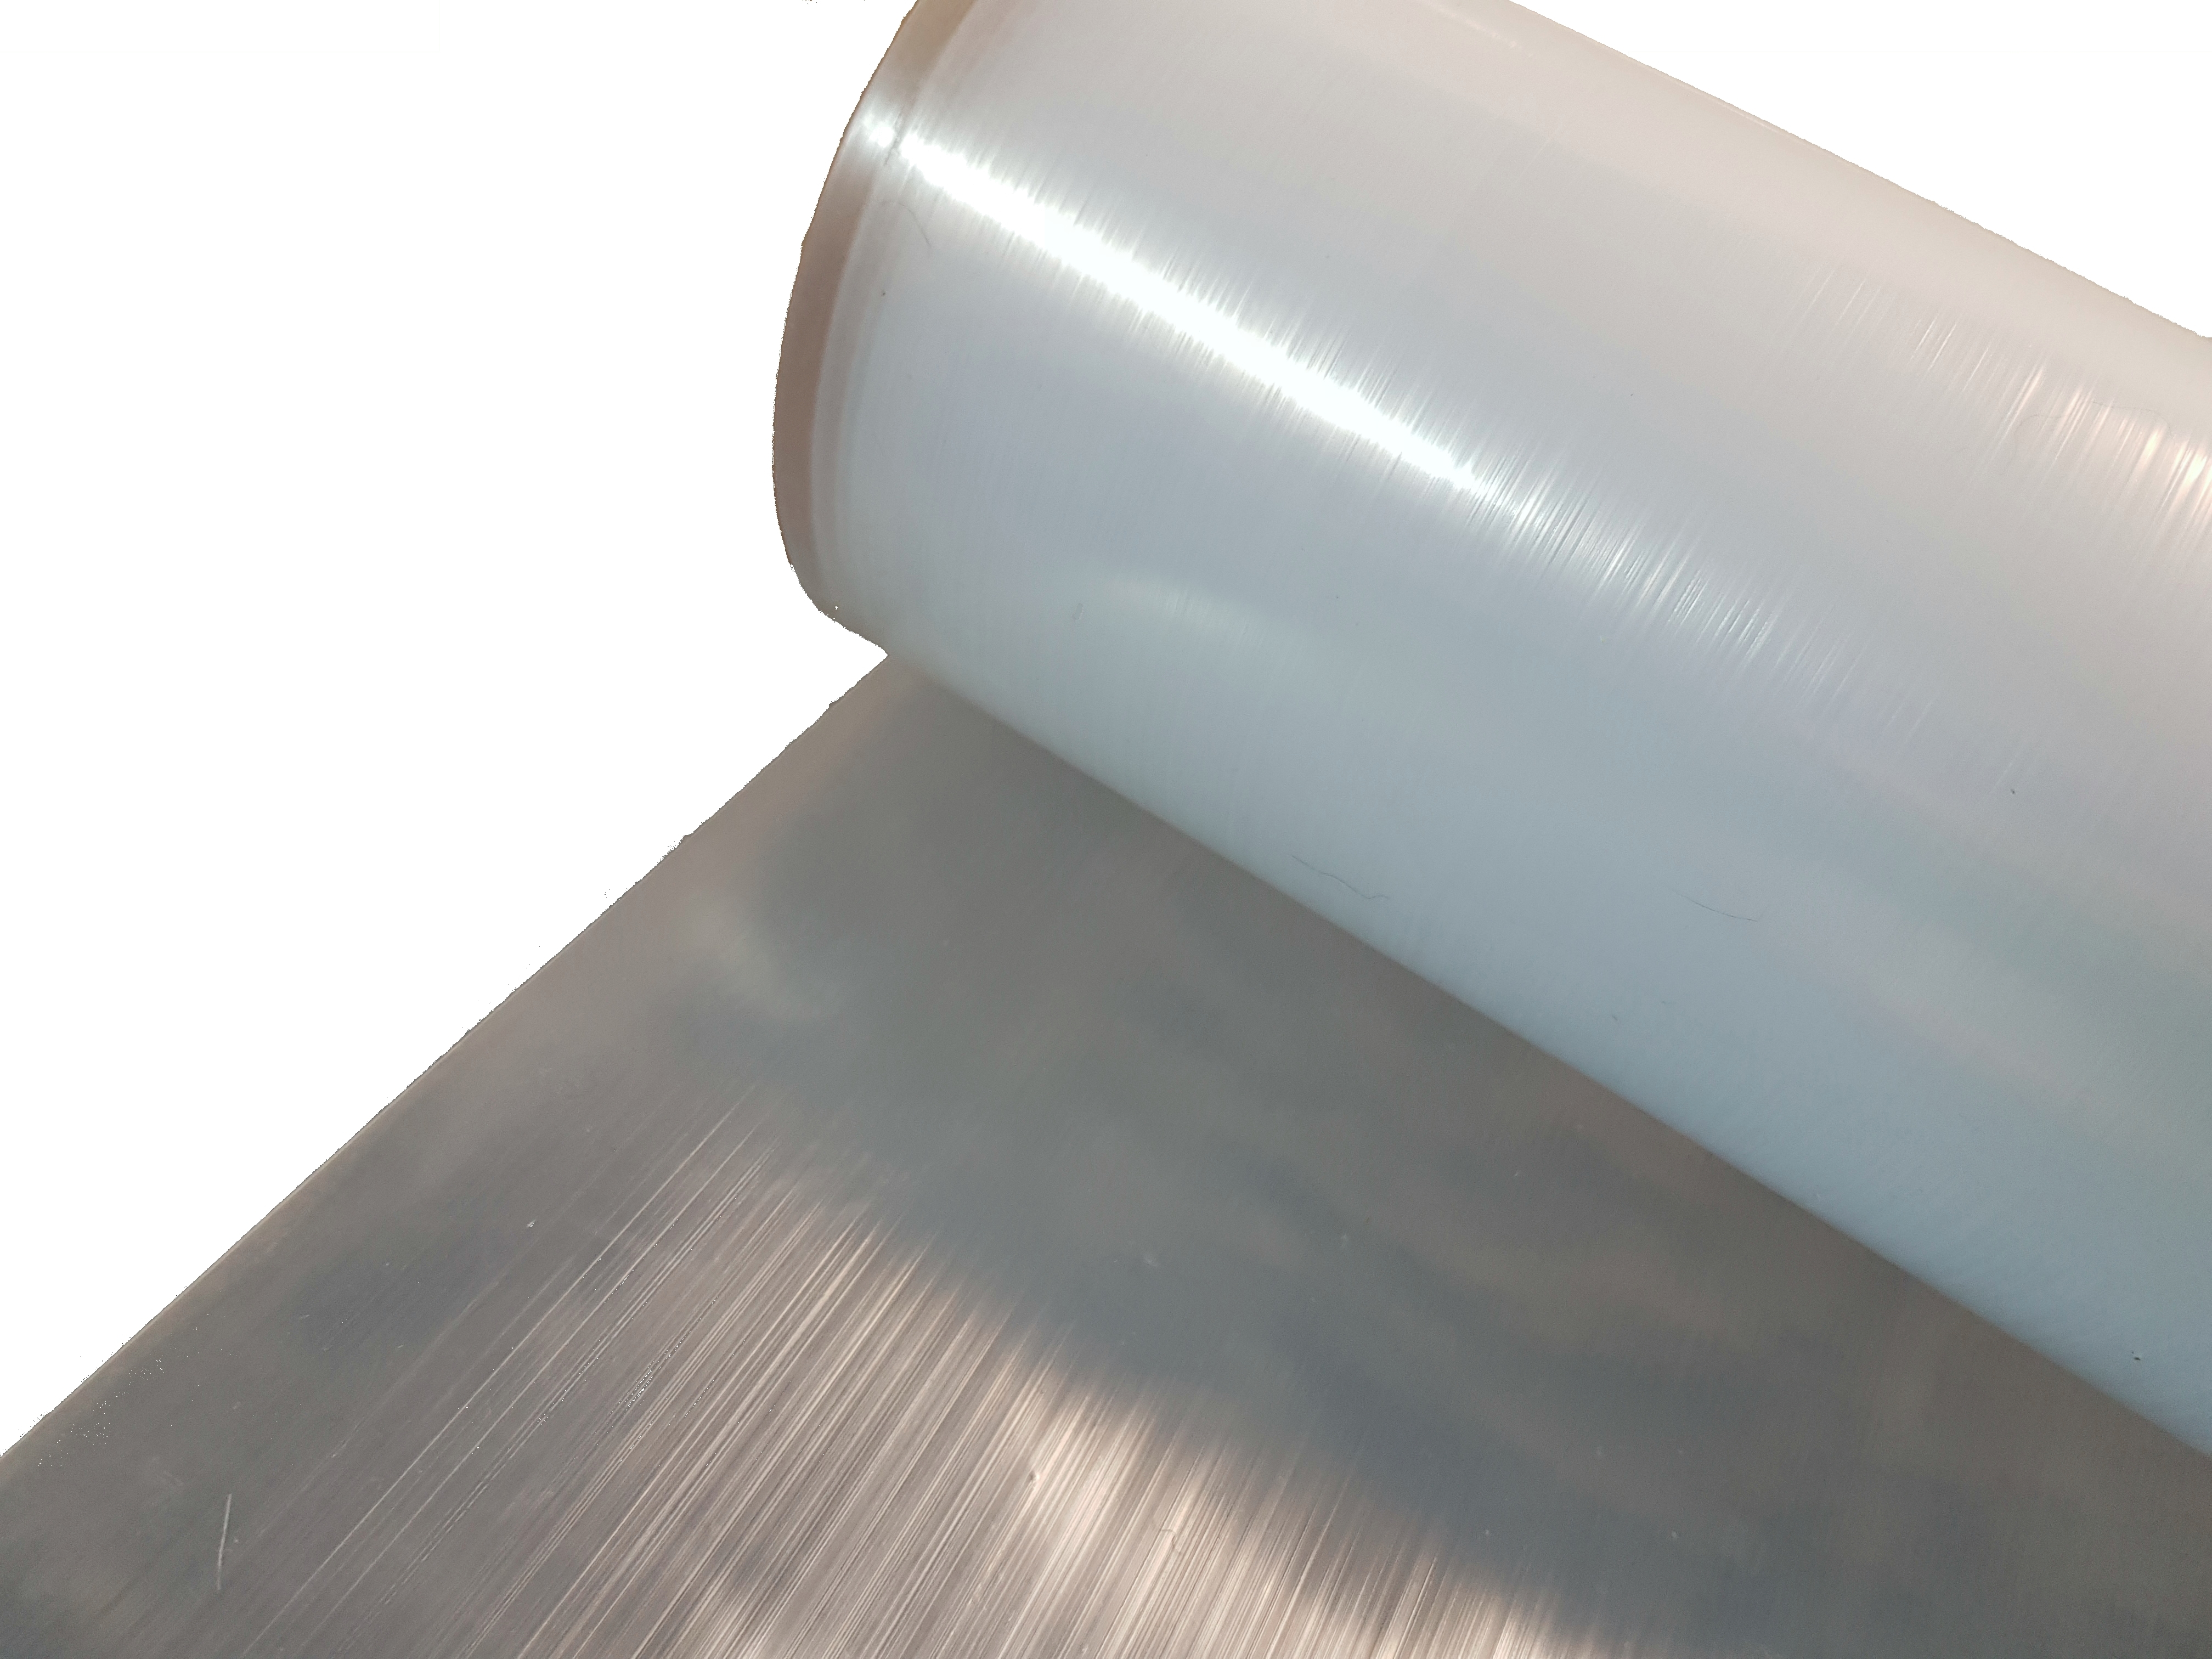 Koppi Kunststoffe - Transparente Folie 3m breit 0,3mm stark Rolle